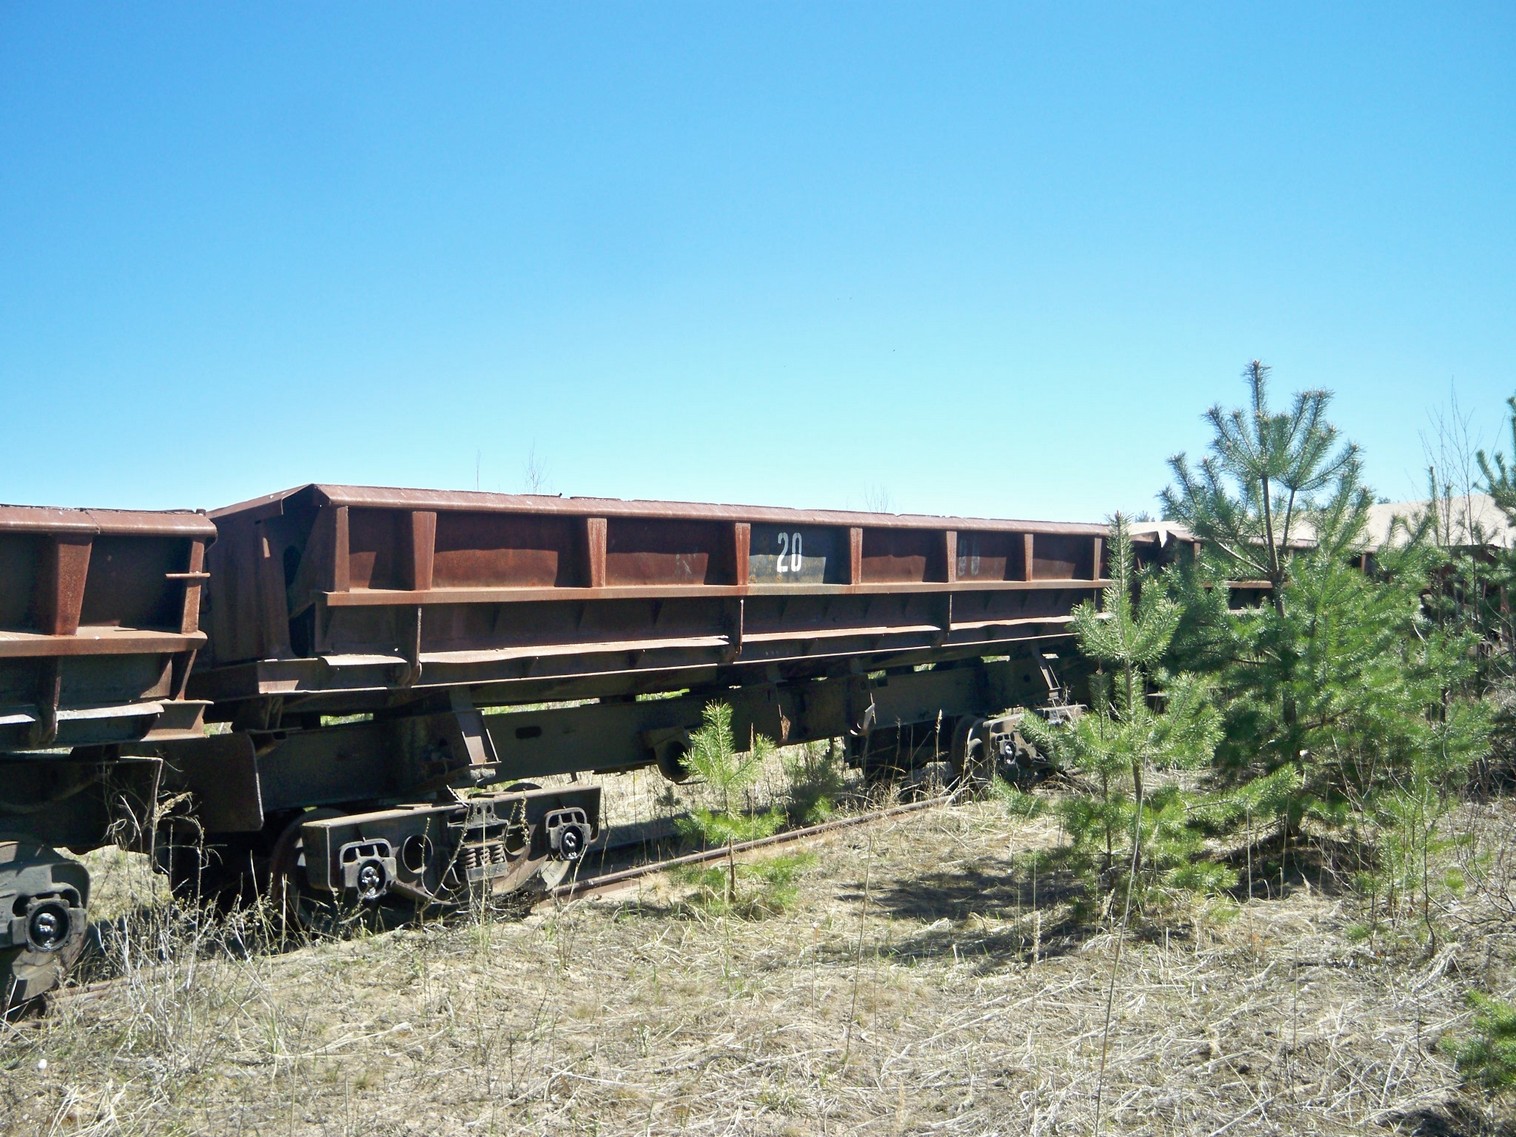 Узкоколейная железная дорога  Тверского комбината строительных материалов №2 — фотографии, сделанные в 2014 году (часть 3)